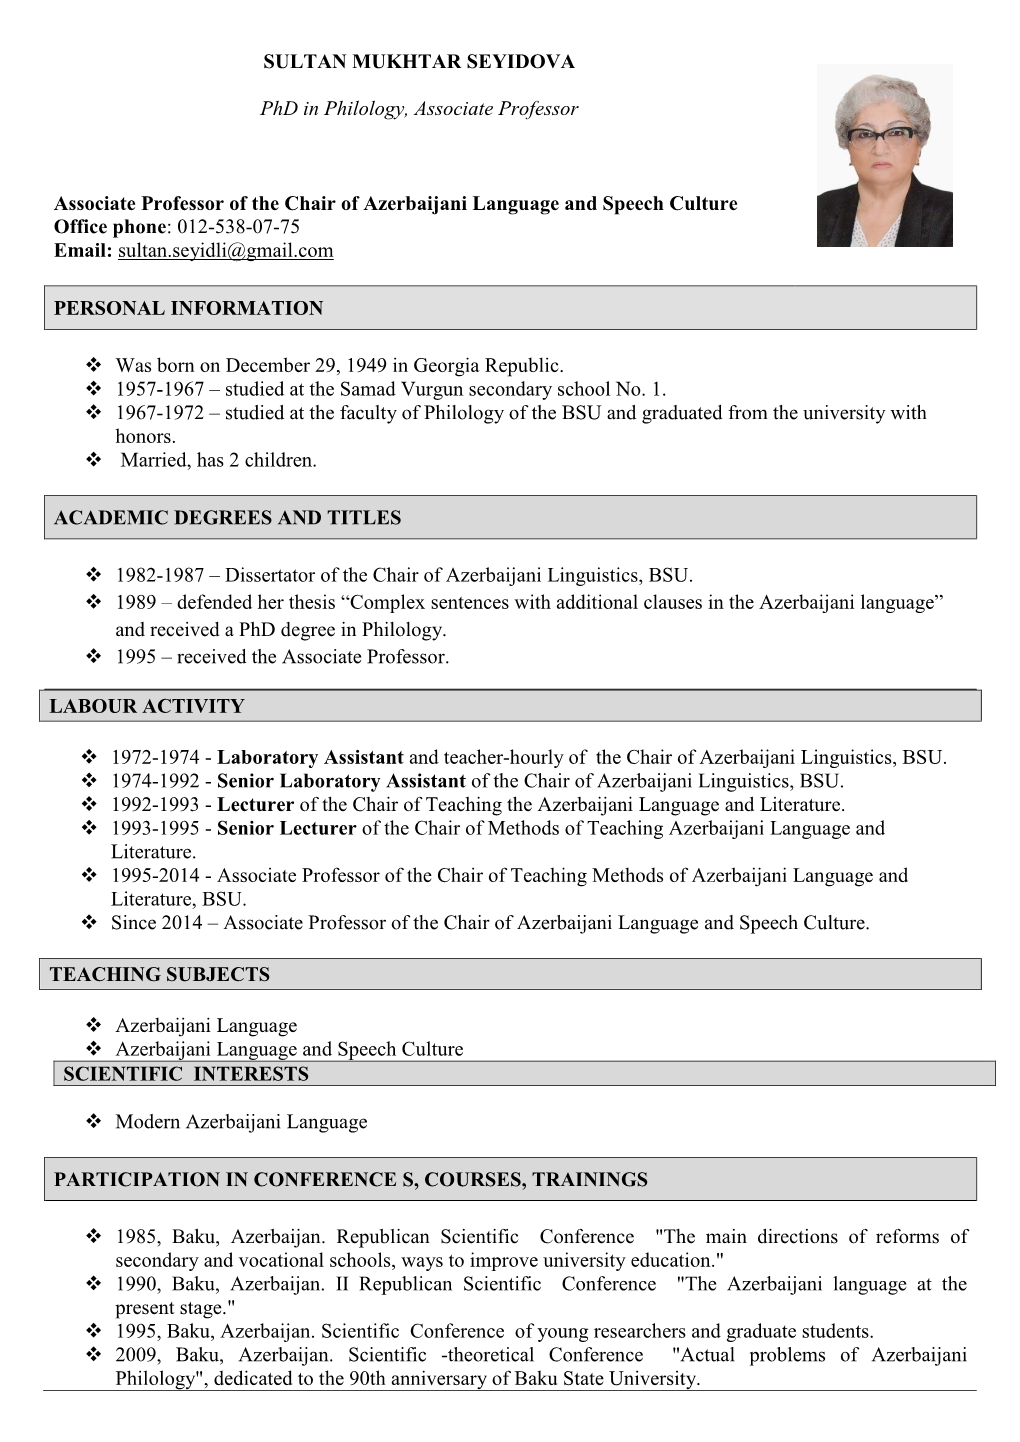 Curriculum Vitae Information Form